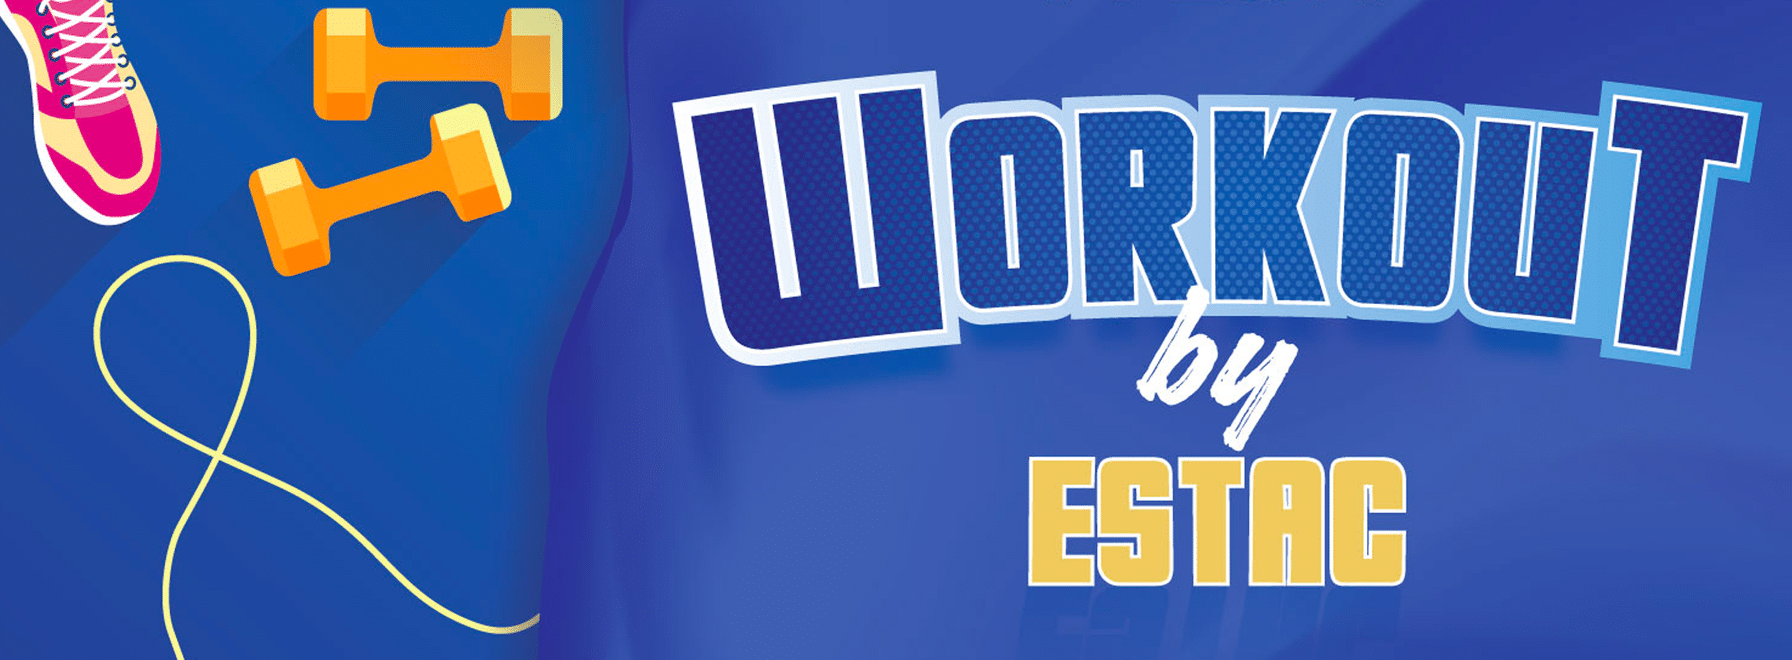 Workout by ESTAC est de retour ce 19 octobre !  ️‍♀️